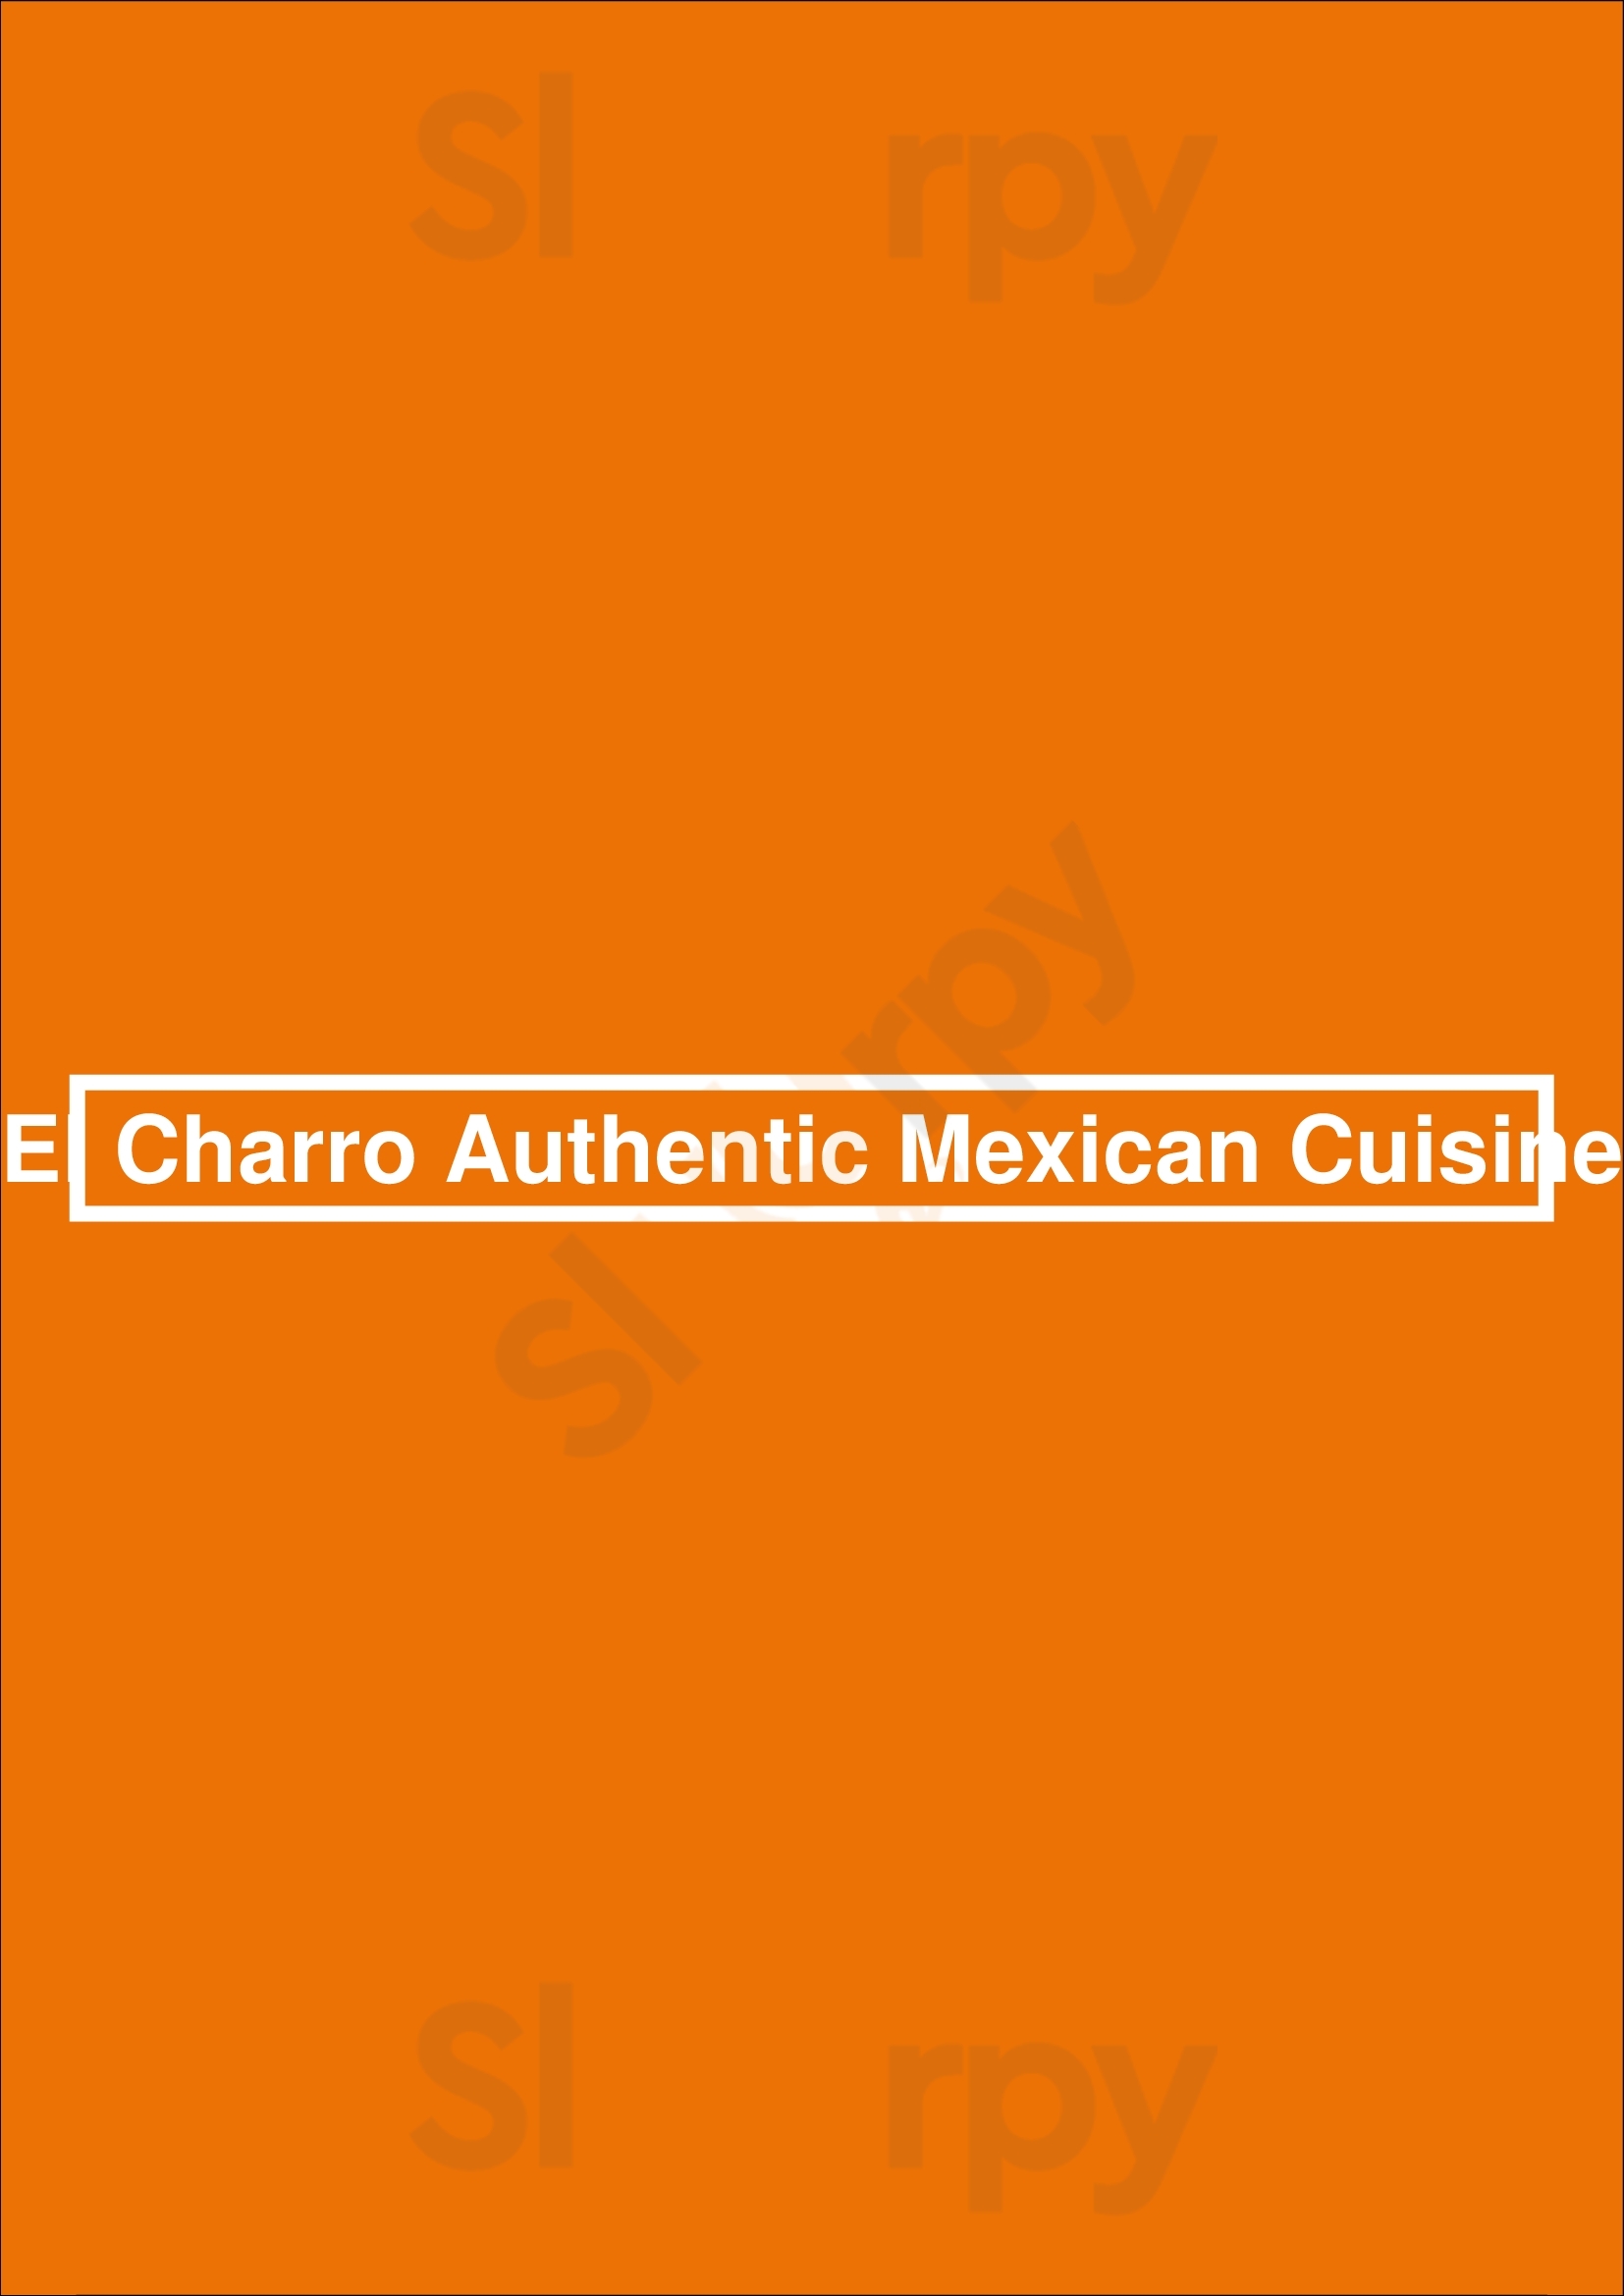 El Charro Authentic Mexican Cuisine Lexington Menu - 1